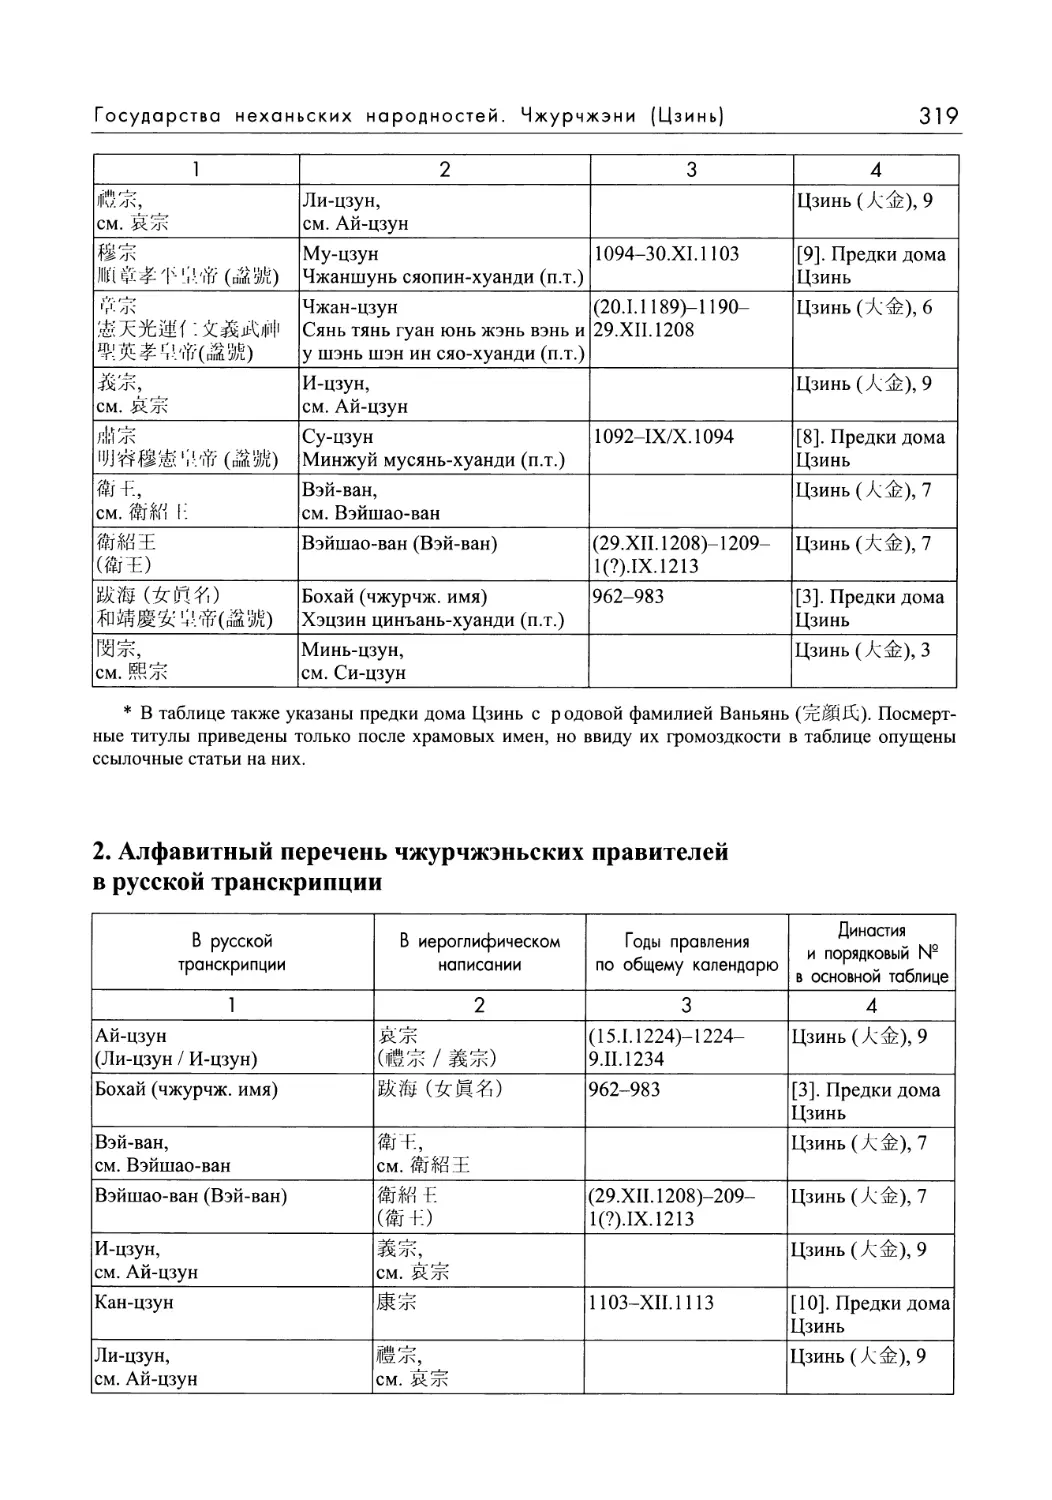 2. Алфавитный перечень чжурчжэньских правителей в русской транскрипции